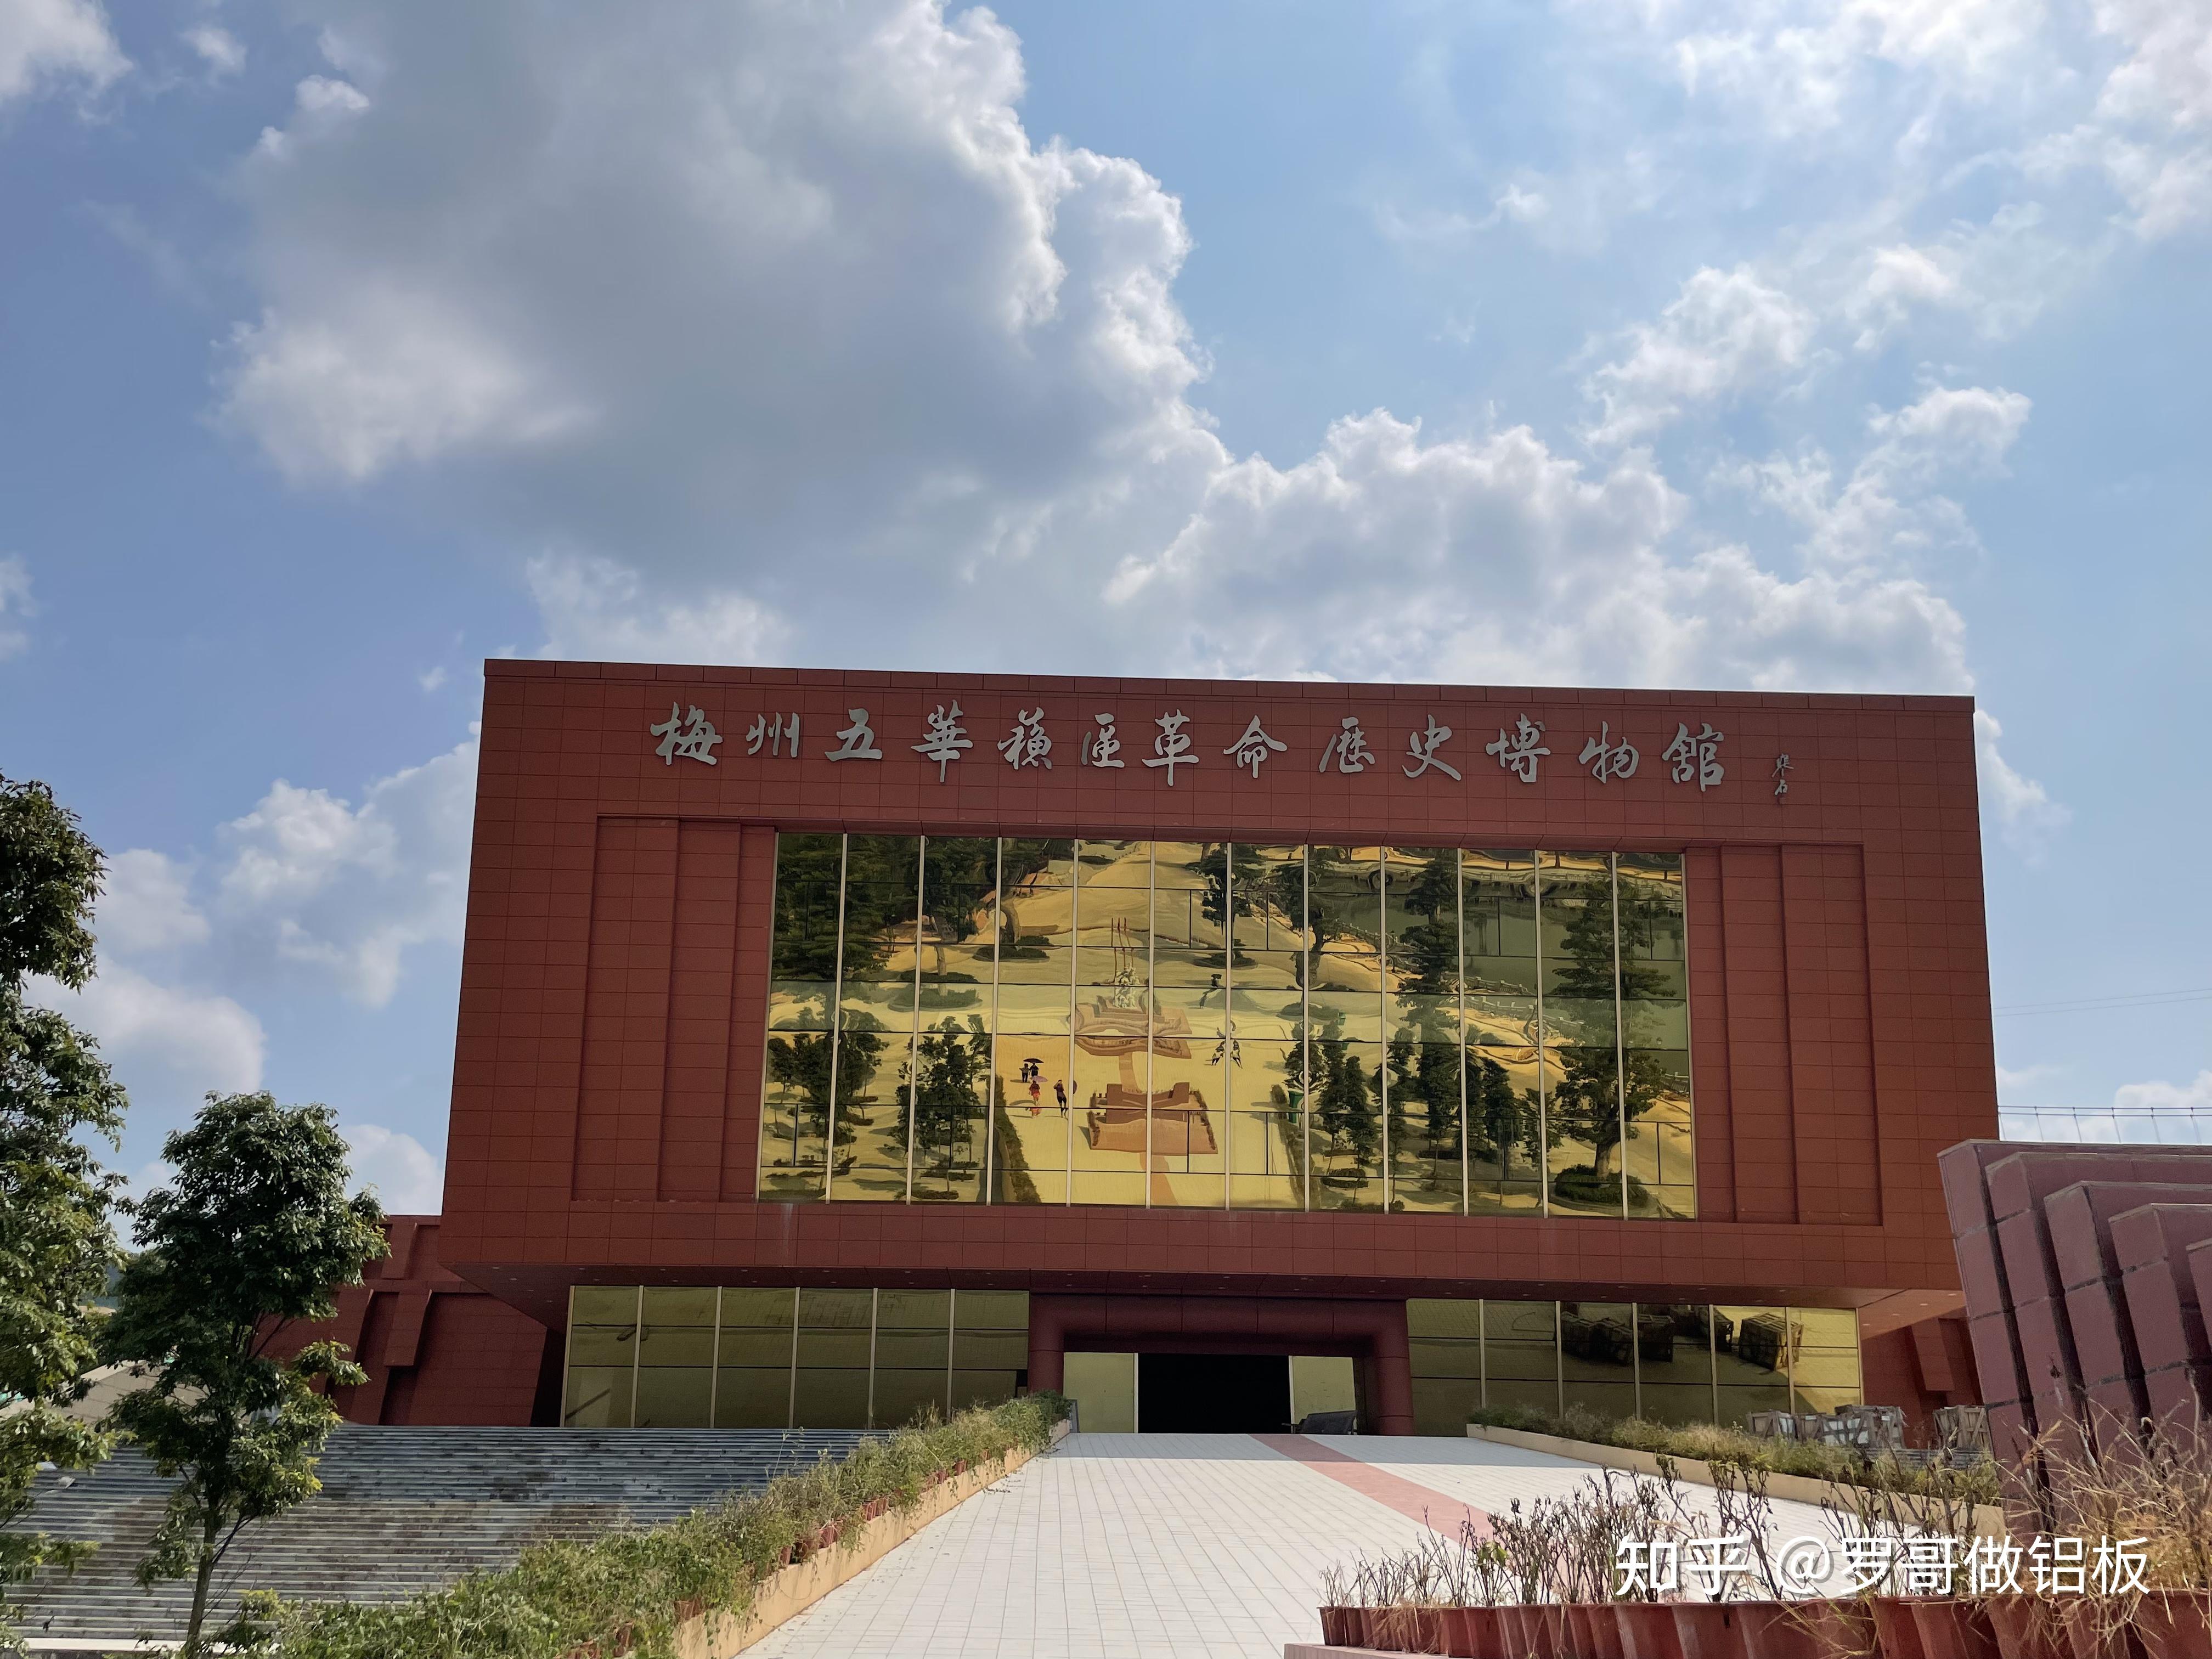 其中梅州市五华县梅林镇南沣养生养老生态园的博物馆外墙就是使用了大